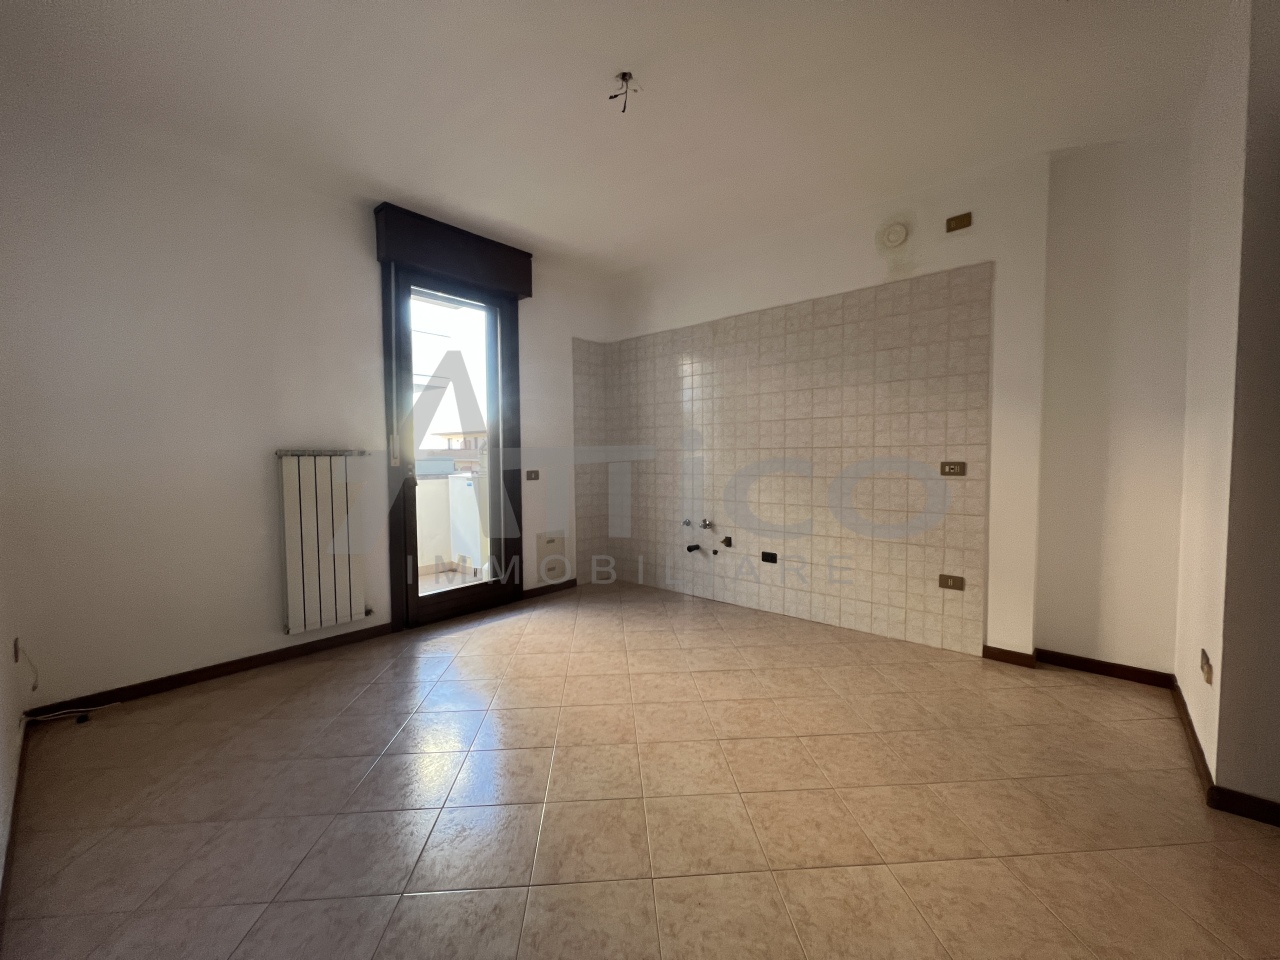 Appartamento in vendita a Rovigo, 2 locali, prezzo € 65.000 | PortaleAgenzieImmobiliari.it